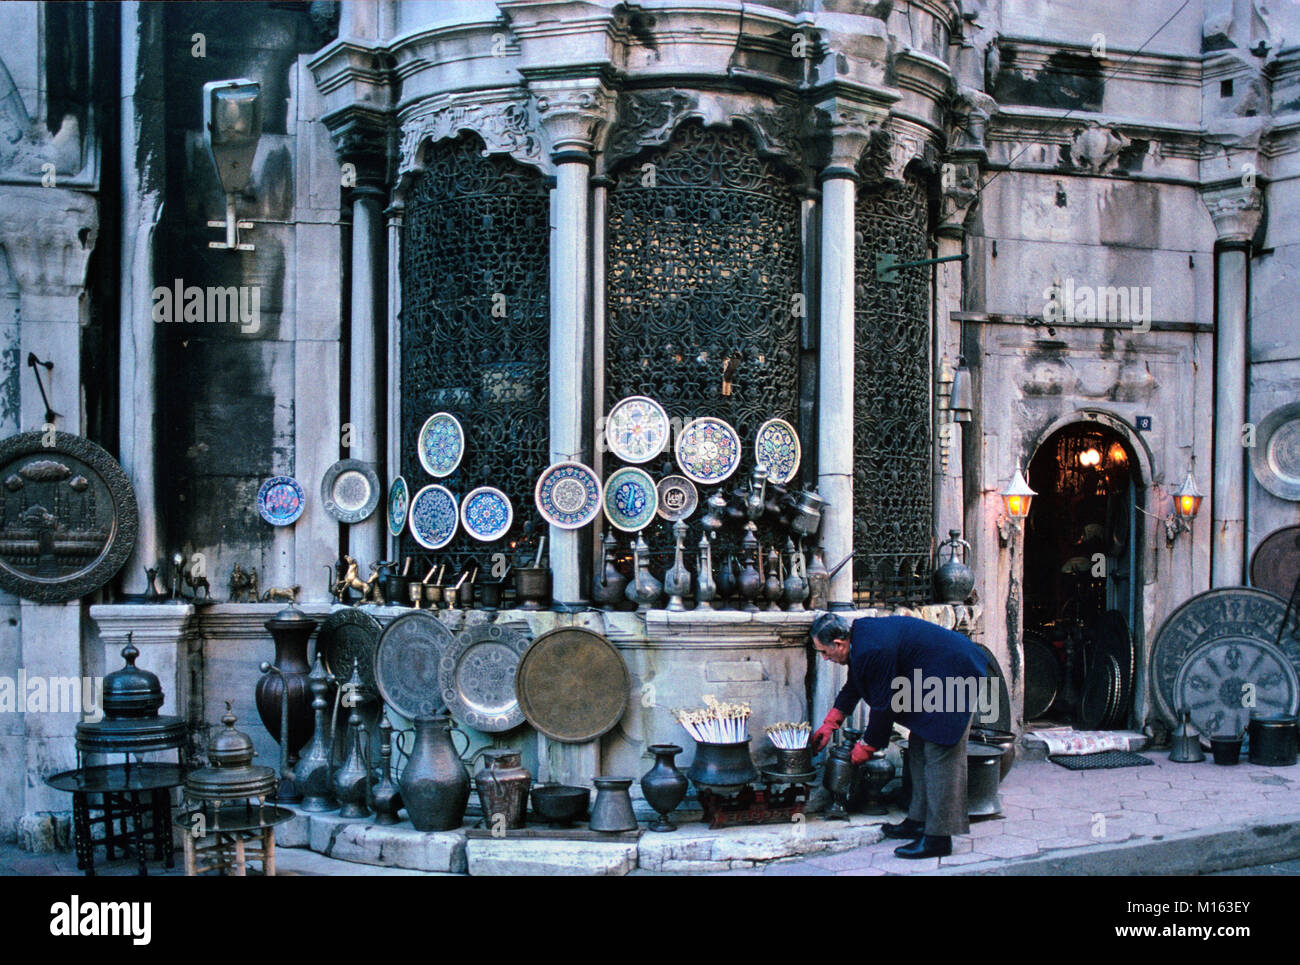 Marktstand oder Ladenbesitzer außerhalb des überdachten Basar oder Grand Basar verkaufen Ware aus Kupfer, Zinn und Porzellan Teller oder Keramik, Istanbul, Türkei Stockfoto